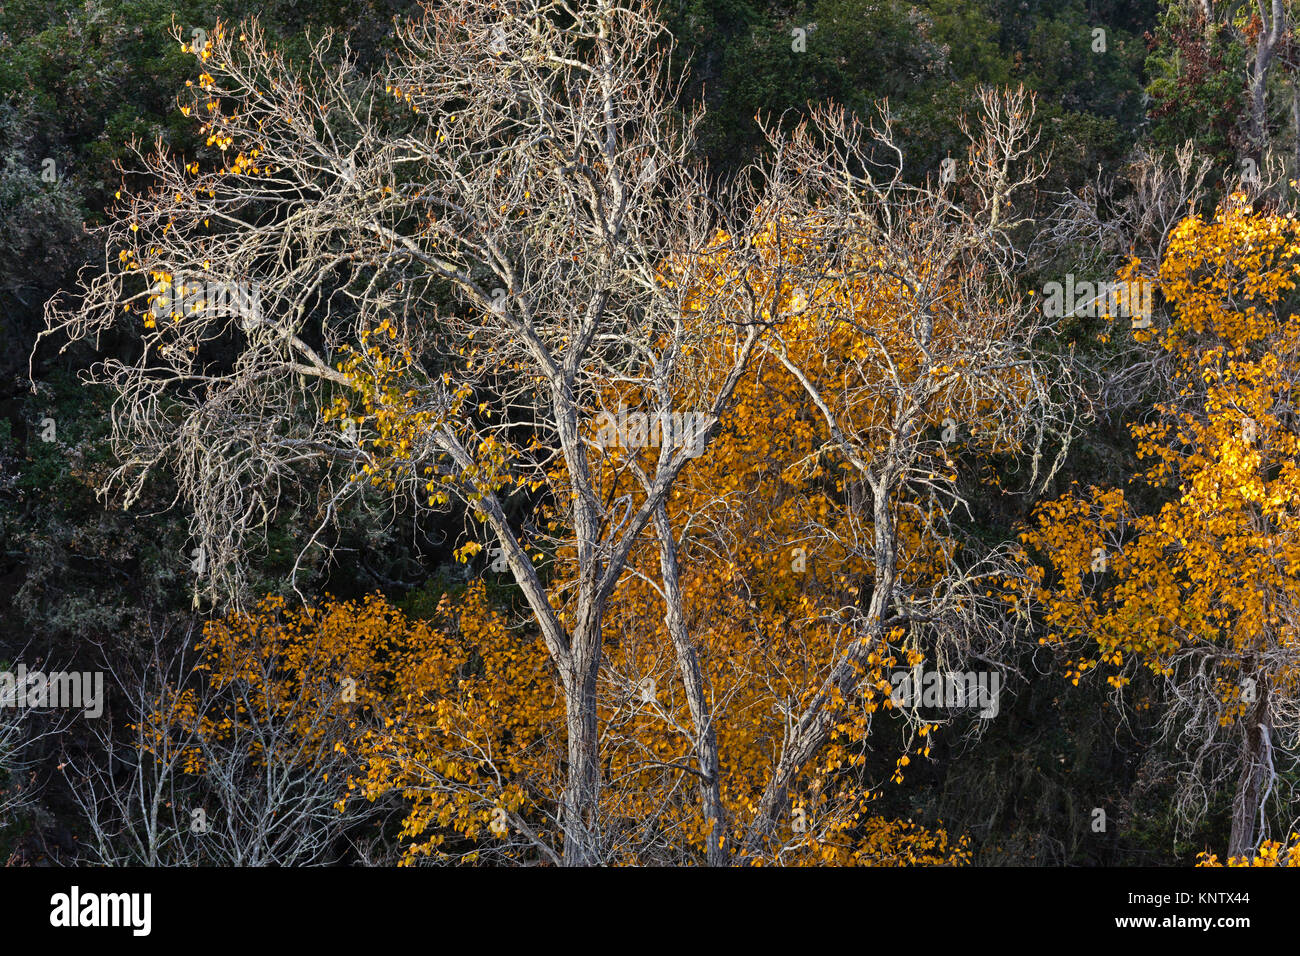 Autumn trees in GARZAS CANYON - CARMEL VALLEY, CALIFORNIA Stock Photo